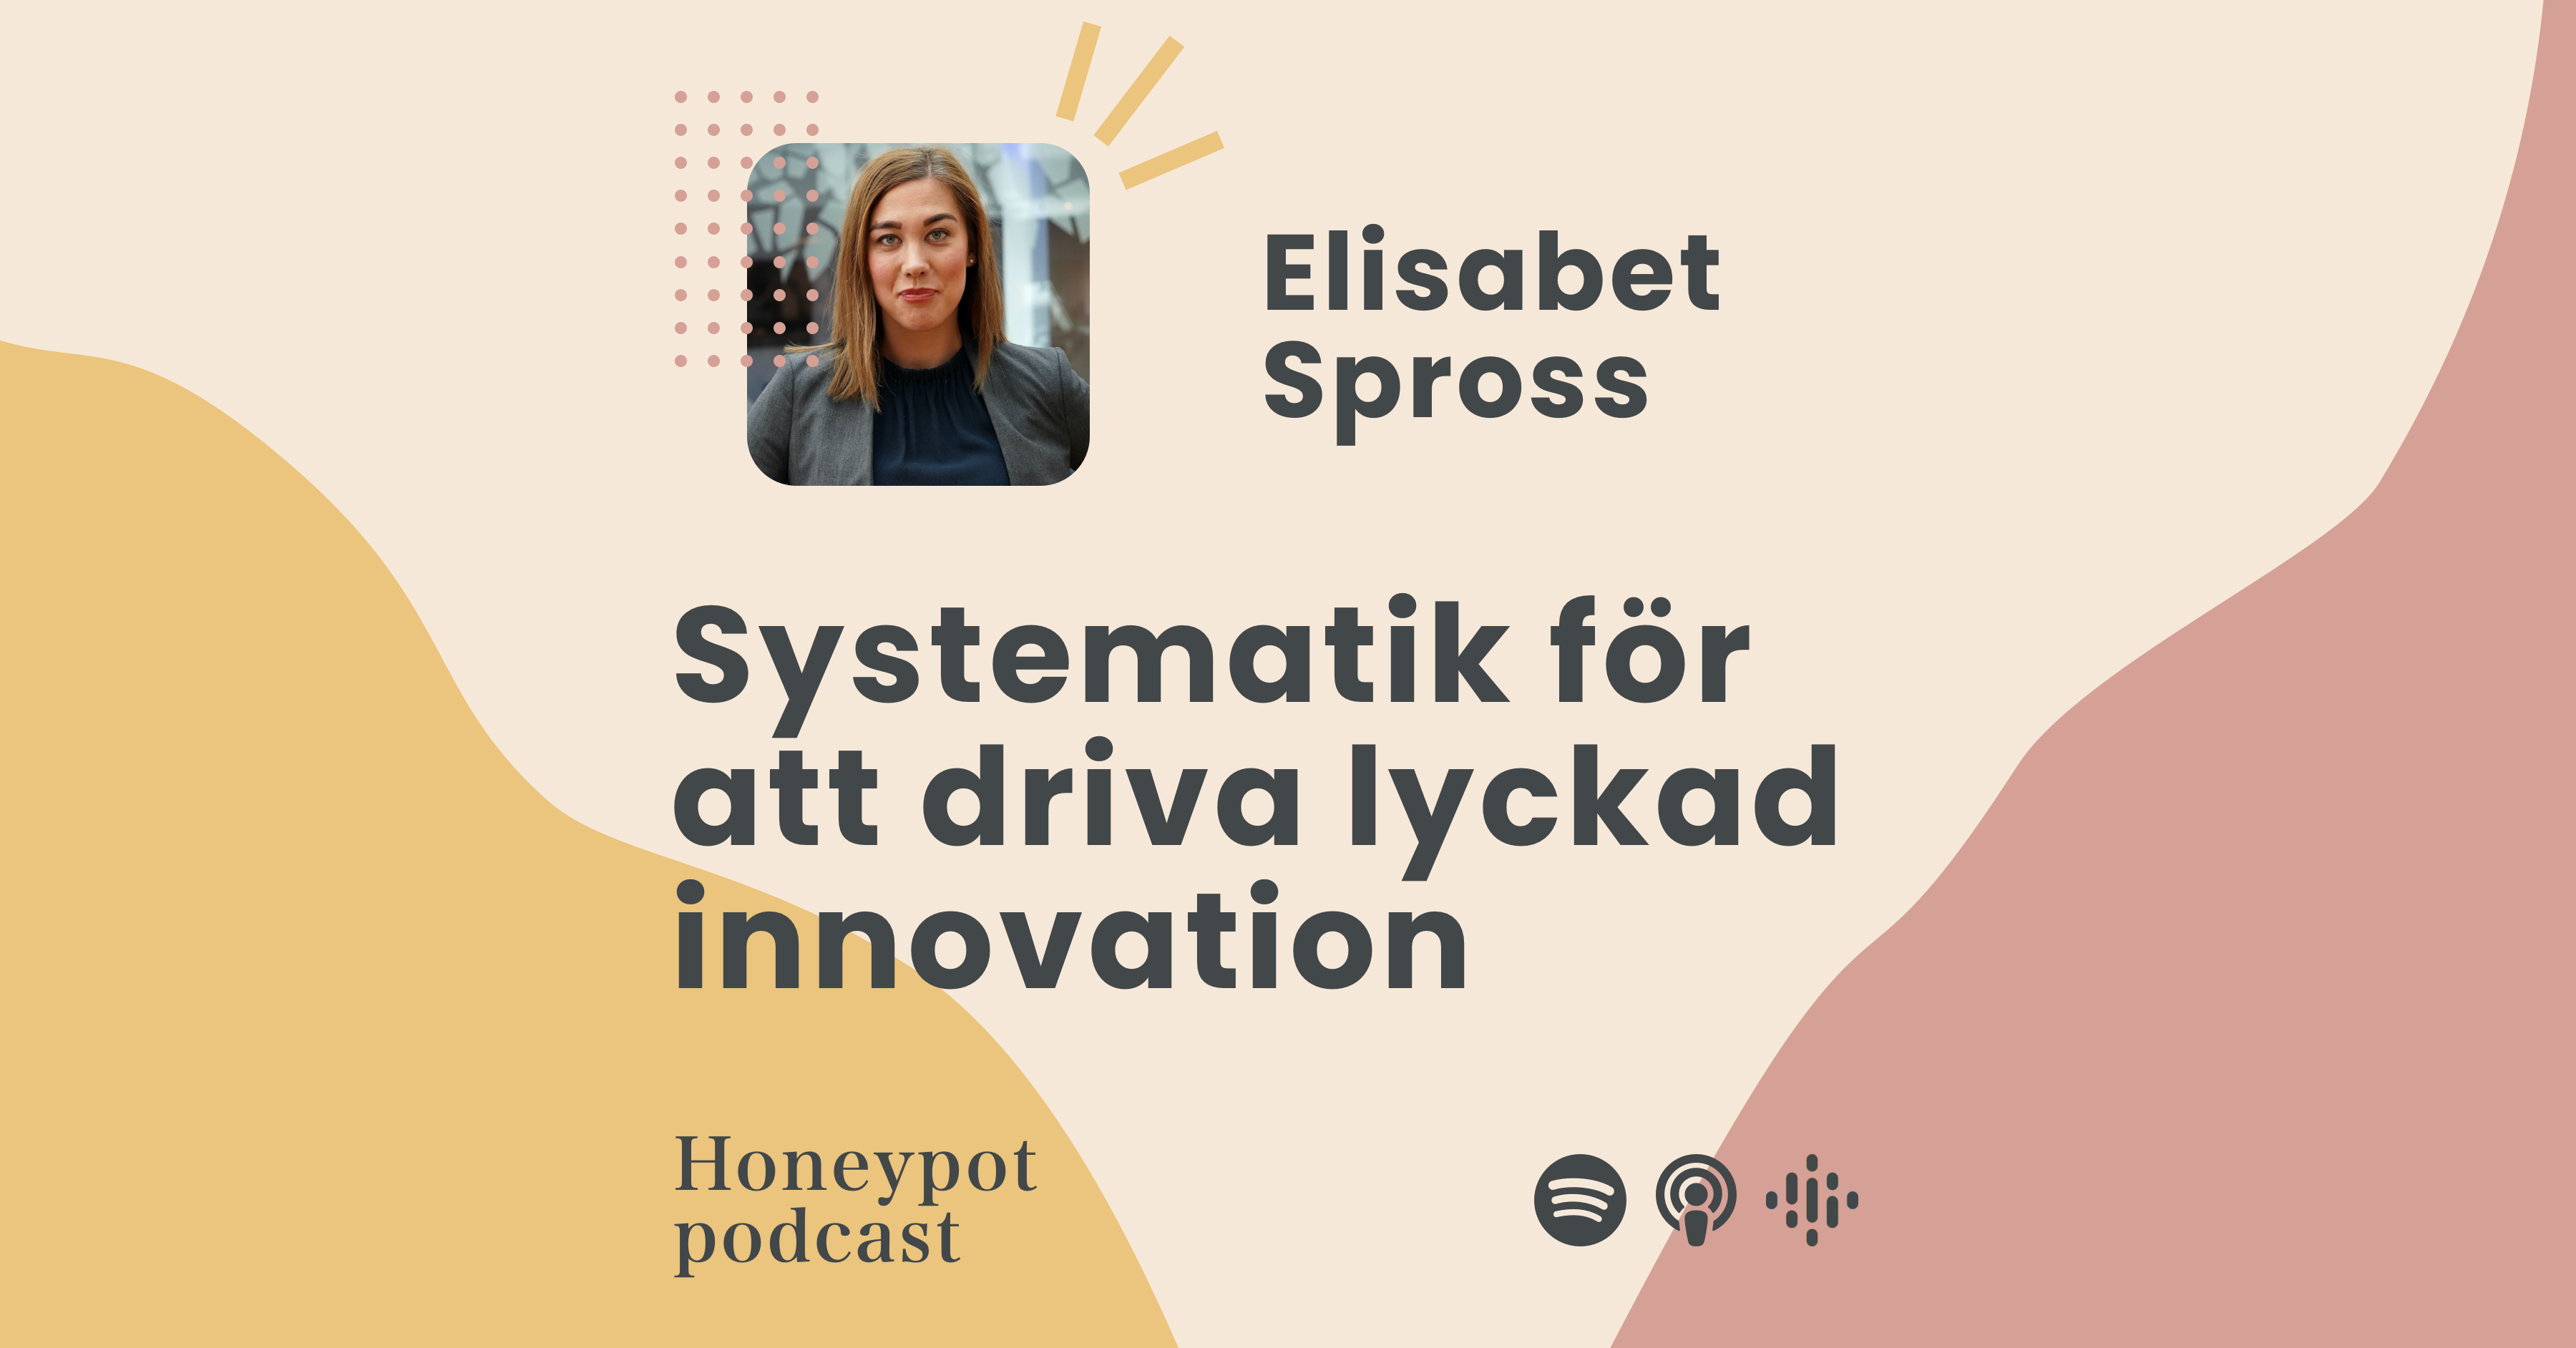 Elisabet Spross - Systematik för att driva lyckad innovation